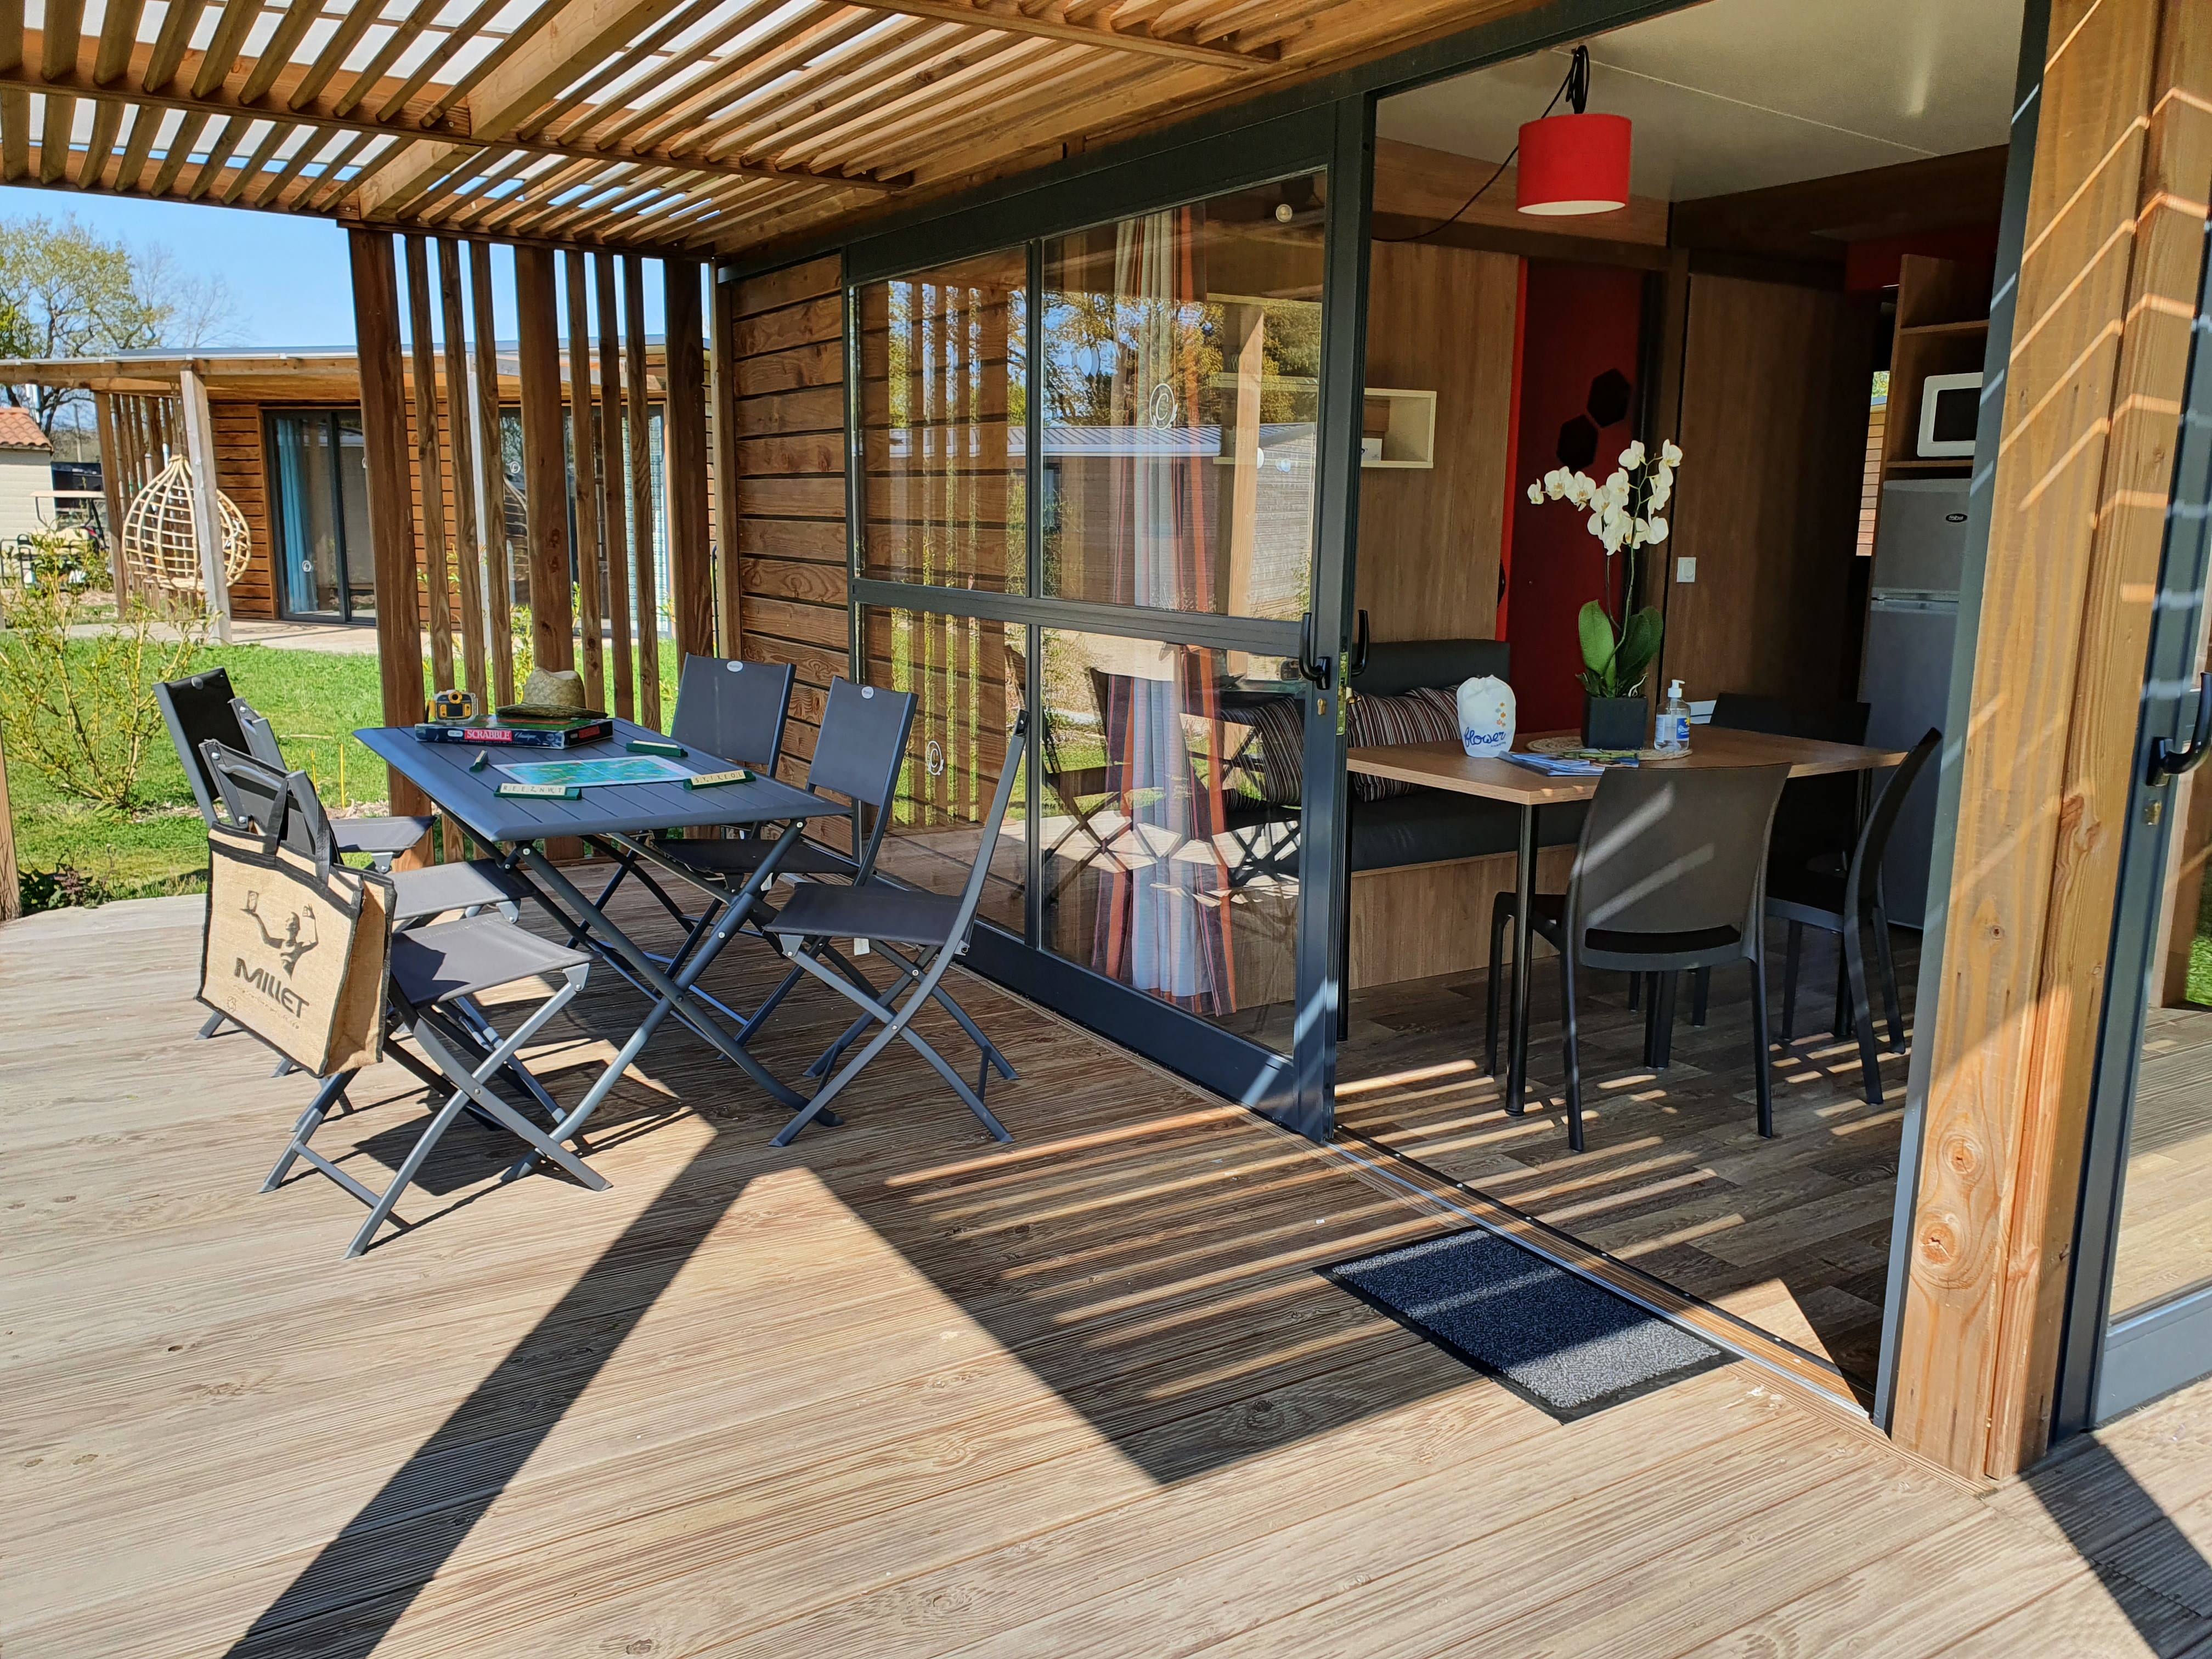 Location - Premium Chalet Nouméa 25M² (2 Chambres) + Terrasse Couverte - Camping Du Lac de la Chausselière